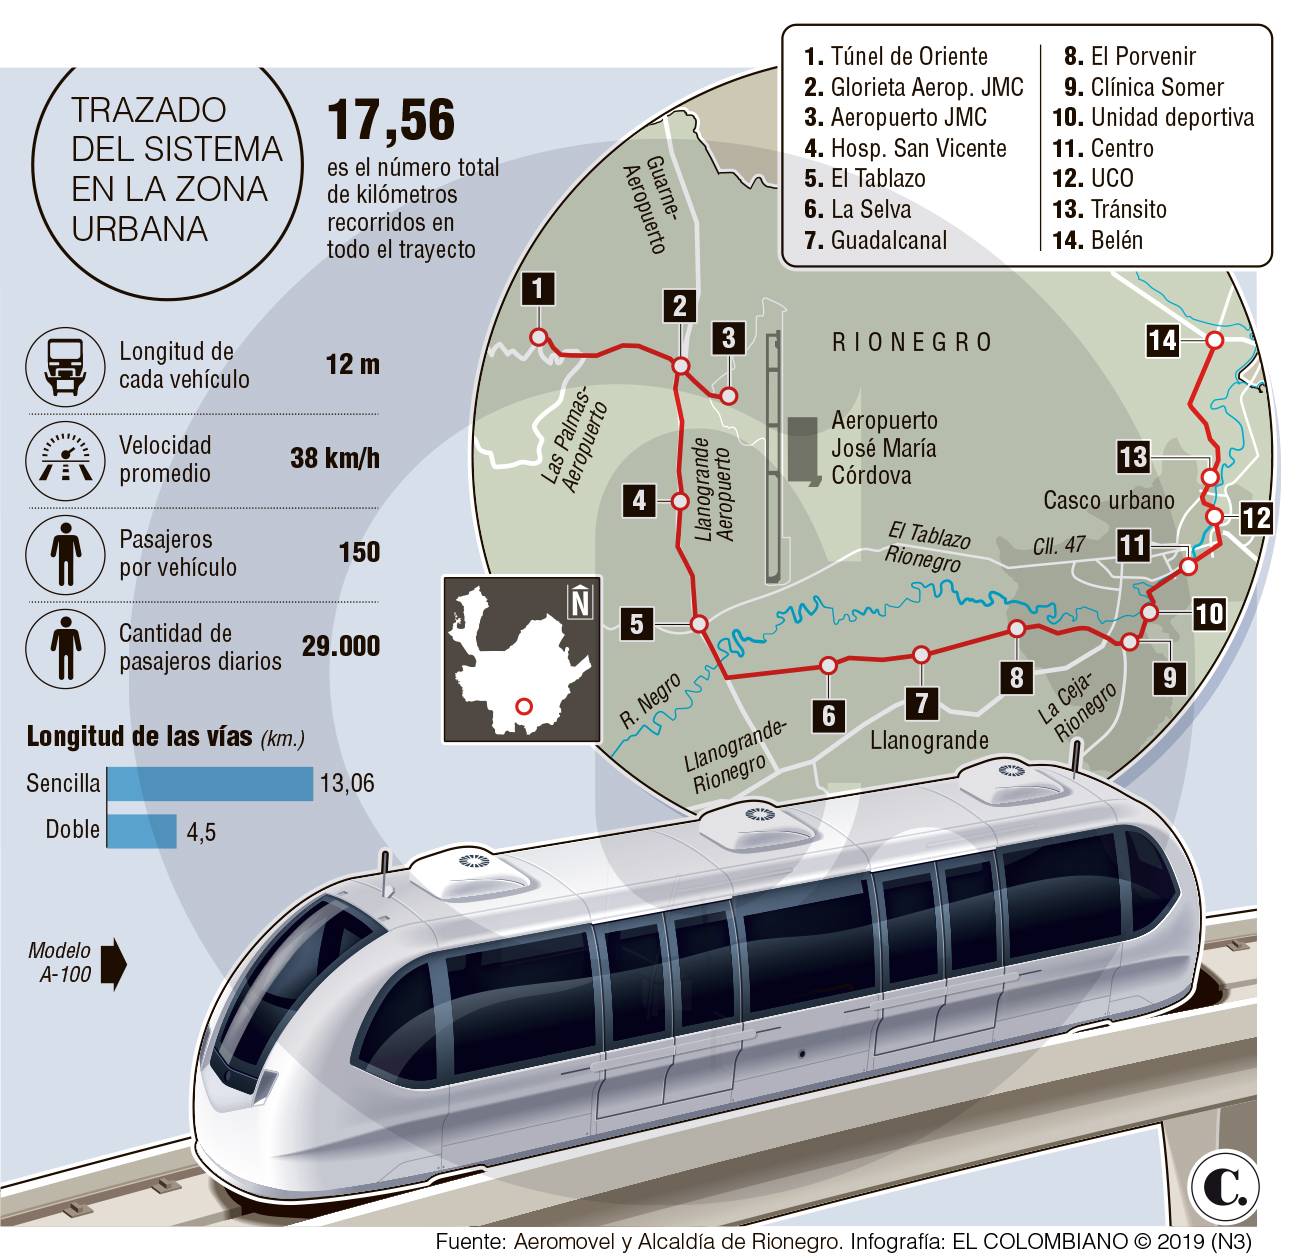 En octubre se adjudicaría tren de Rionegro: alcaldía